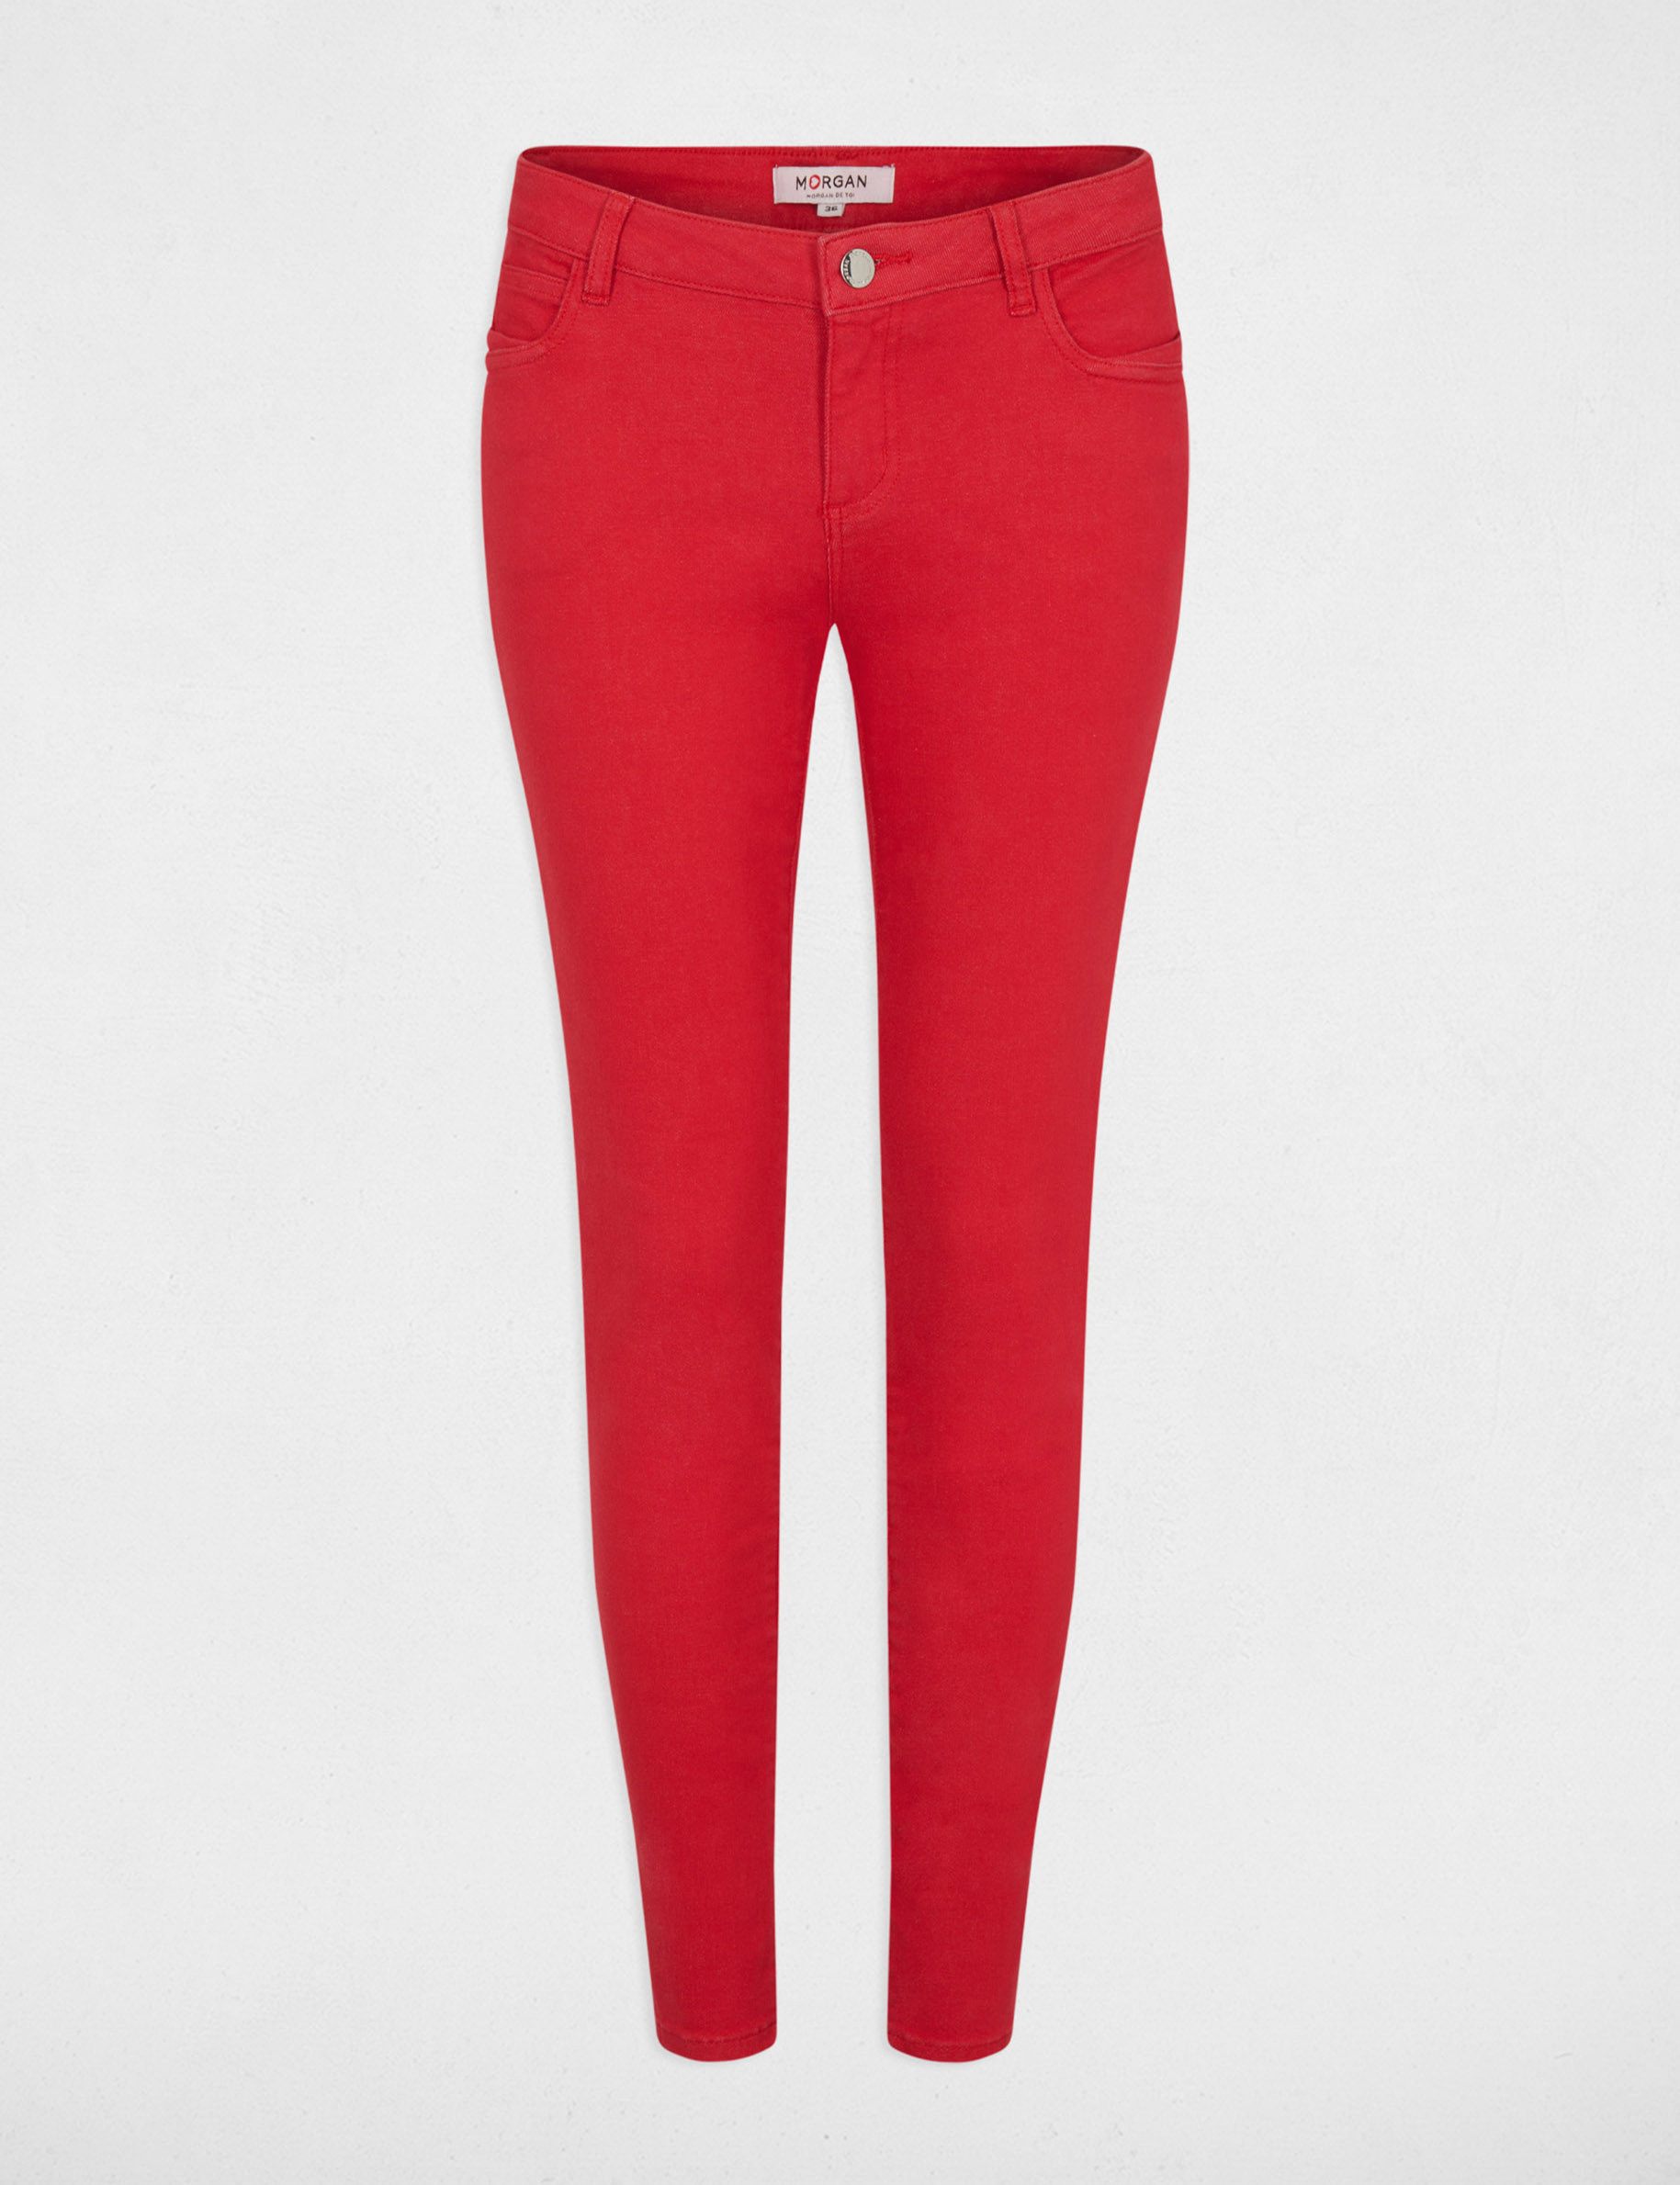 Skinny broek met 5 zakken rood vrouw